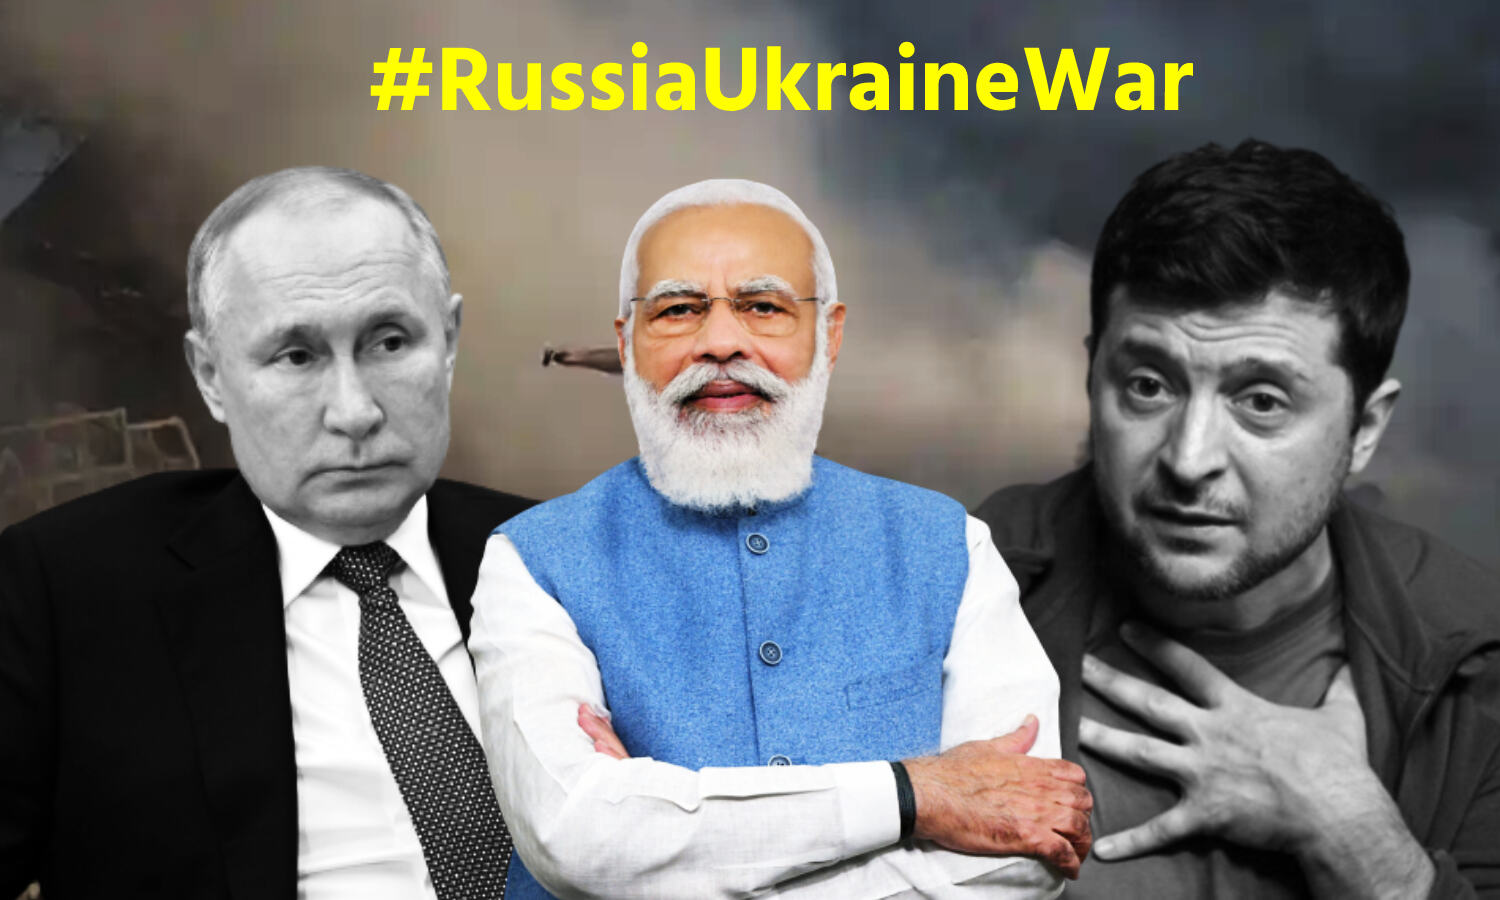 Russia-Ukraine War : पीएम मोदी निभाएं मध्यस्थ की भूमिका, हम करेंगे स्वागत : यूक्रेन के विदेश मंत्री